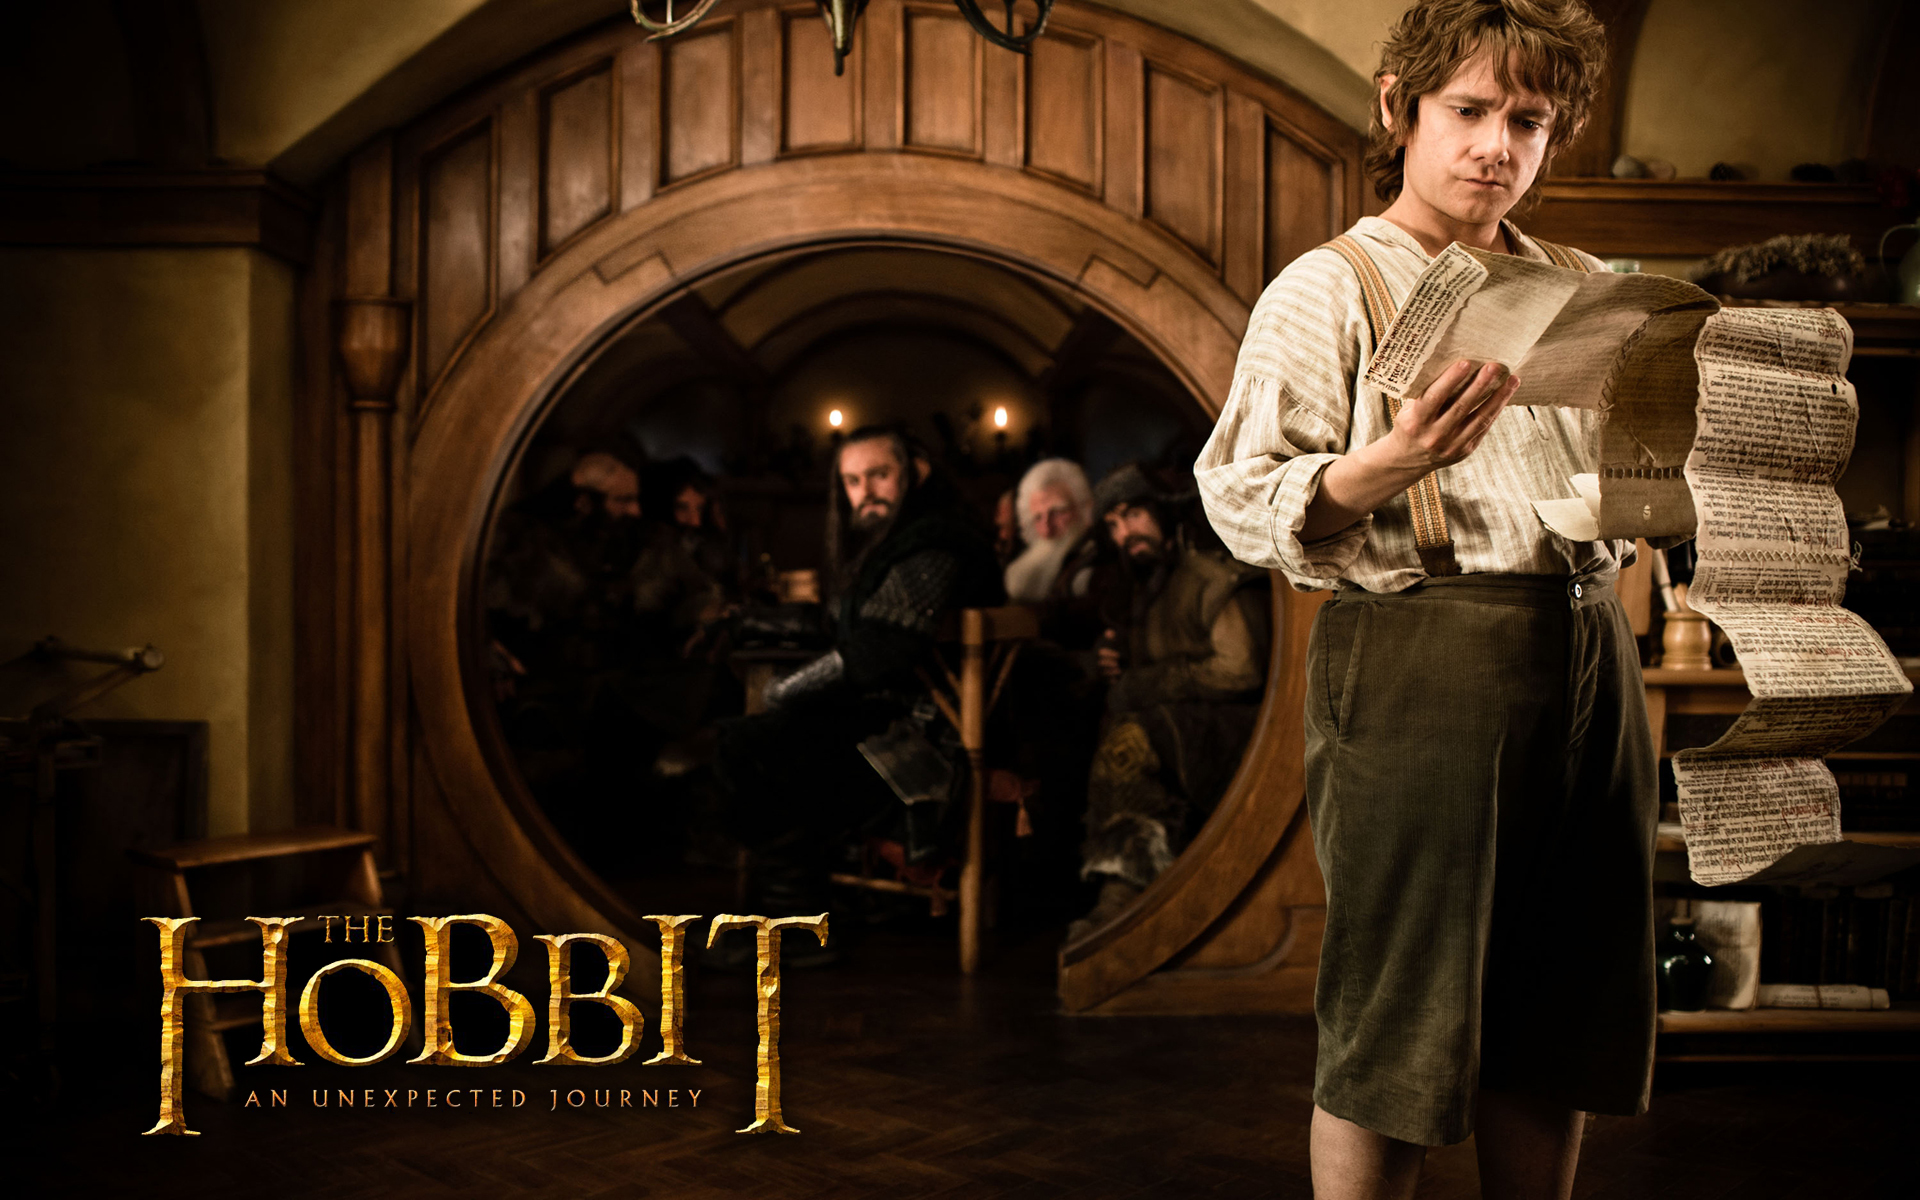 Hobbit Bilbo Baggins